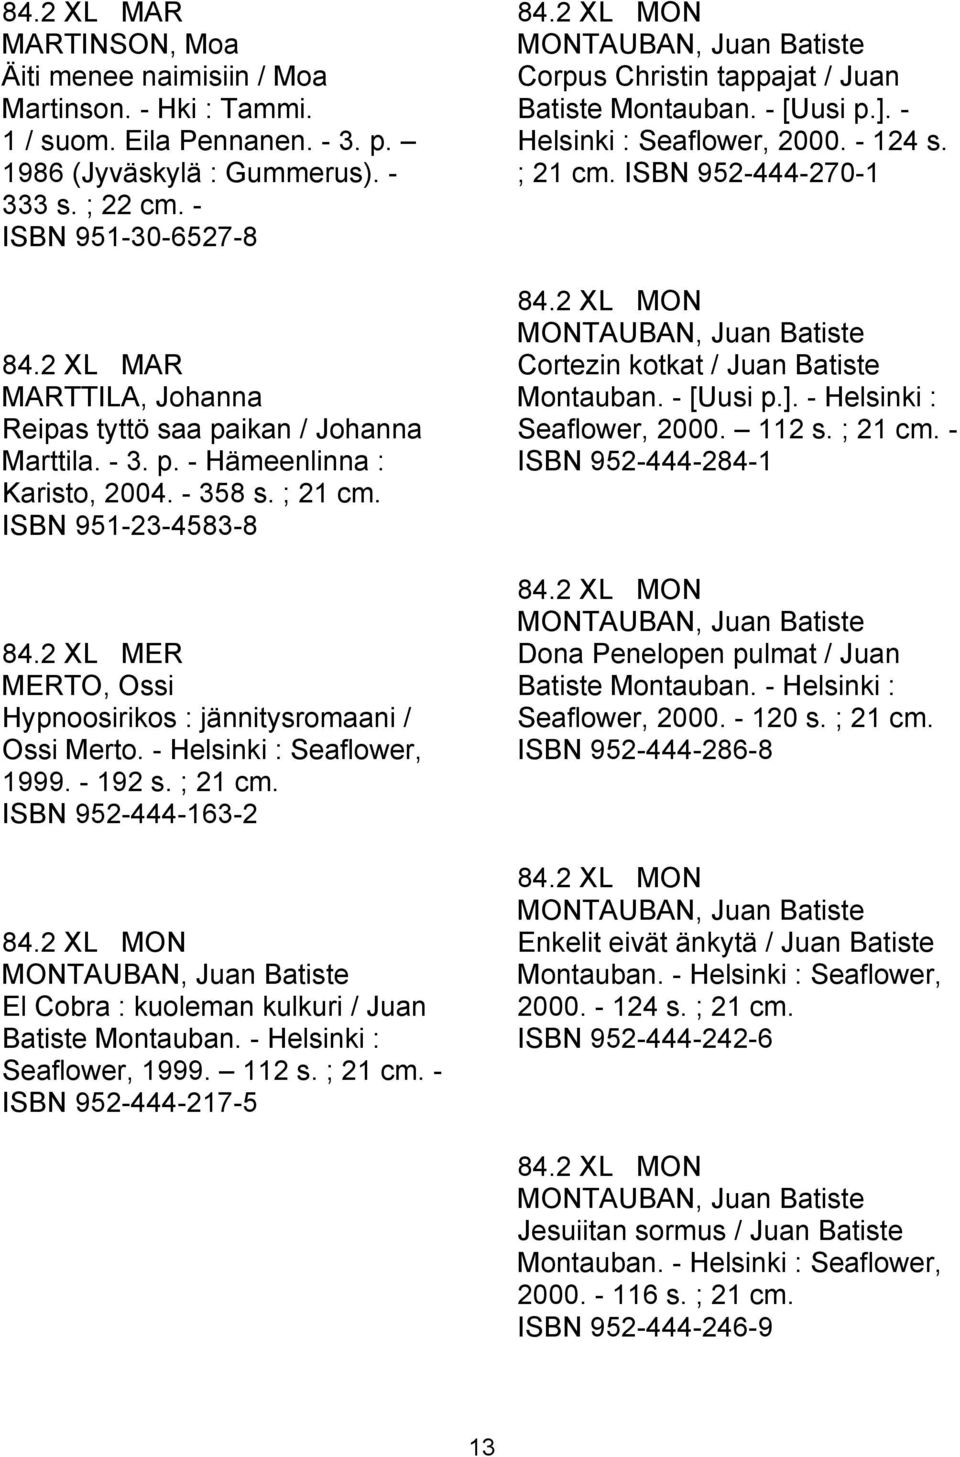 2 XL MER MERTO, Ossi Hypnoosirikos : jännitysromaani / Ossi Merto. - Helsinki : Seaflower, 1999. - 192 s. ; 21 cm. ISBN 952-444-163-2 84.